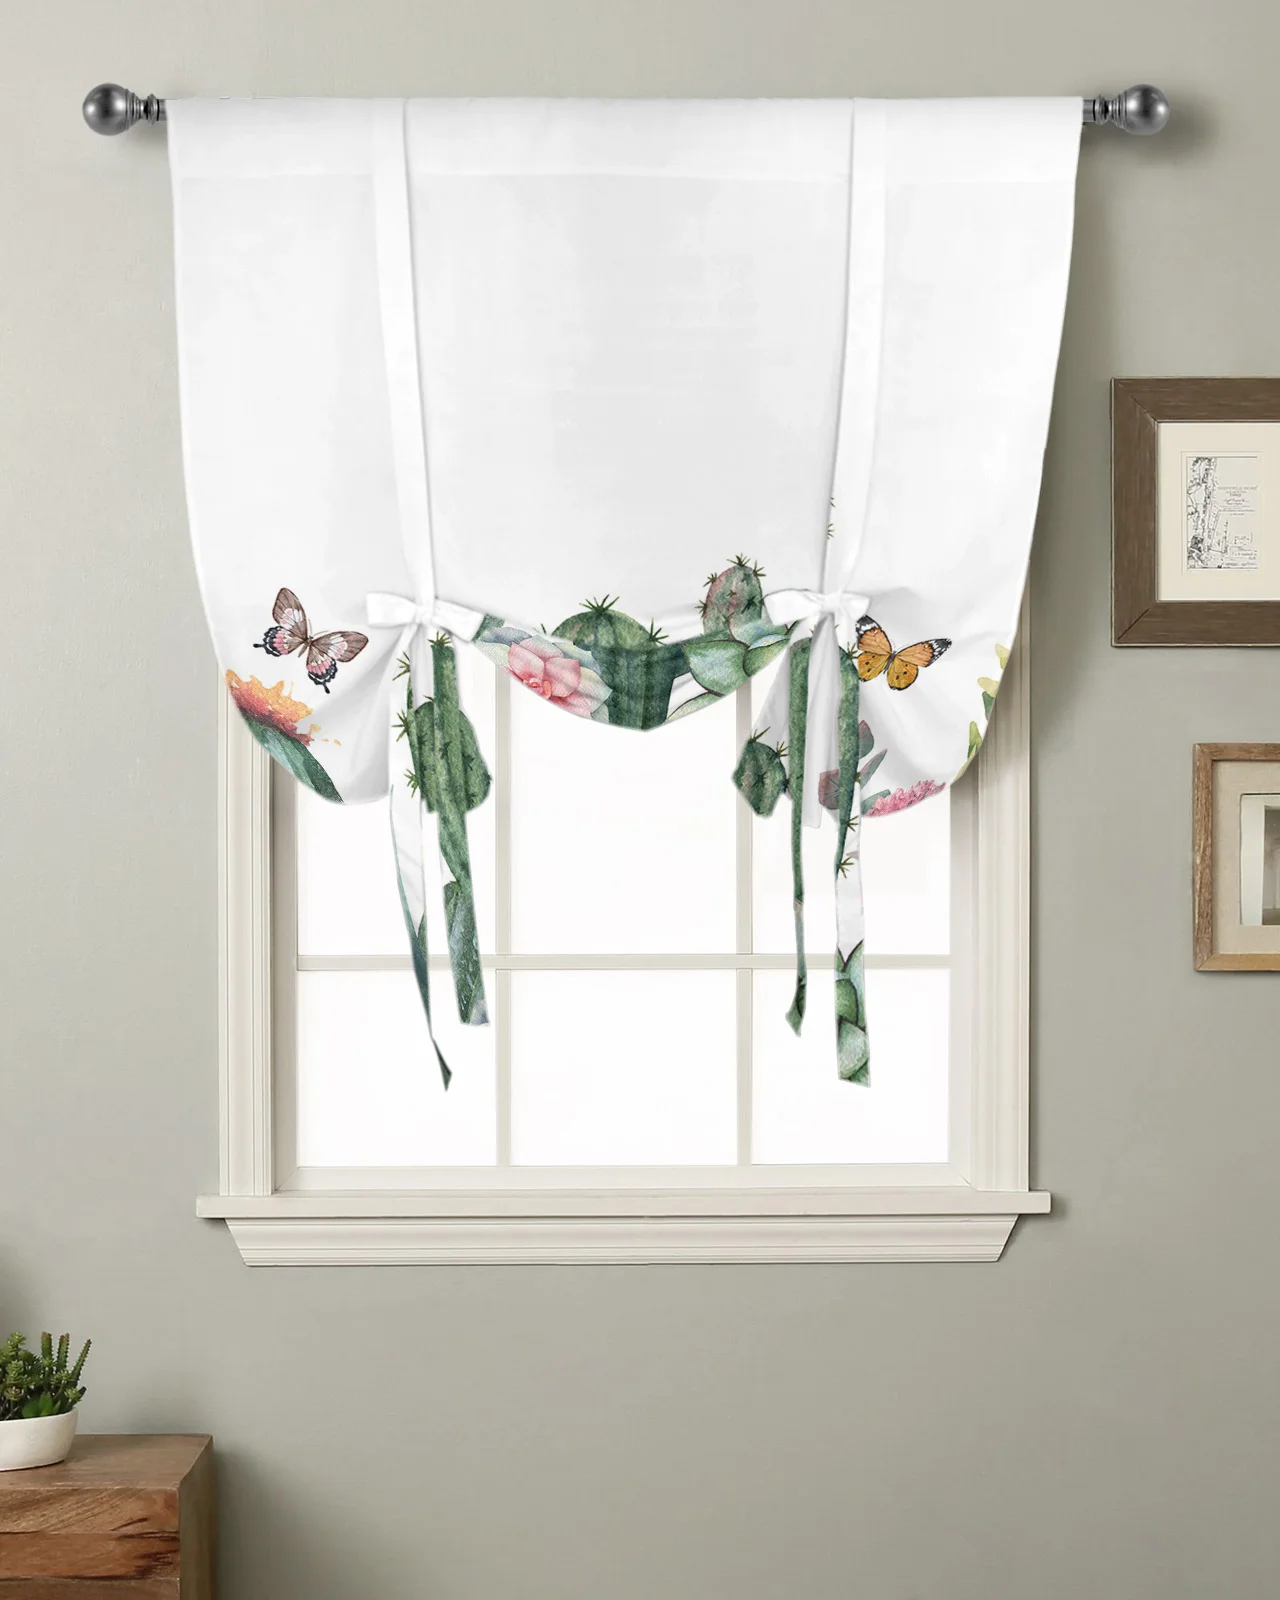 תוספות בסגנון קקטוס צמחים טרופיים וילון חלון הסלון עיצוב הבית תריסים ווילונות במטבח לקשור וילונות קצר